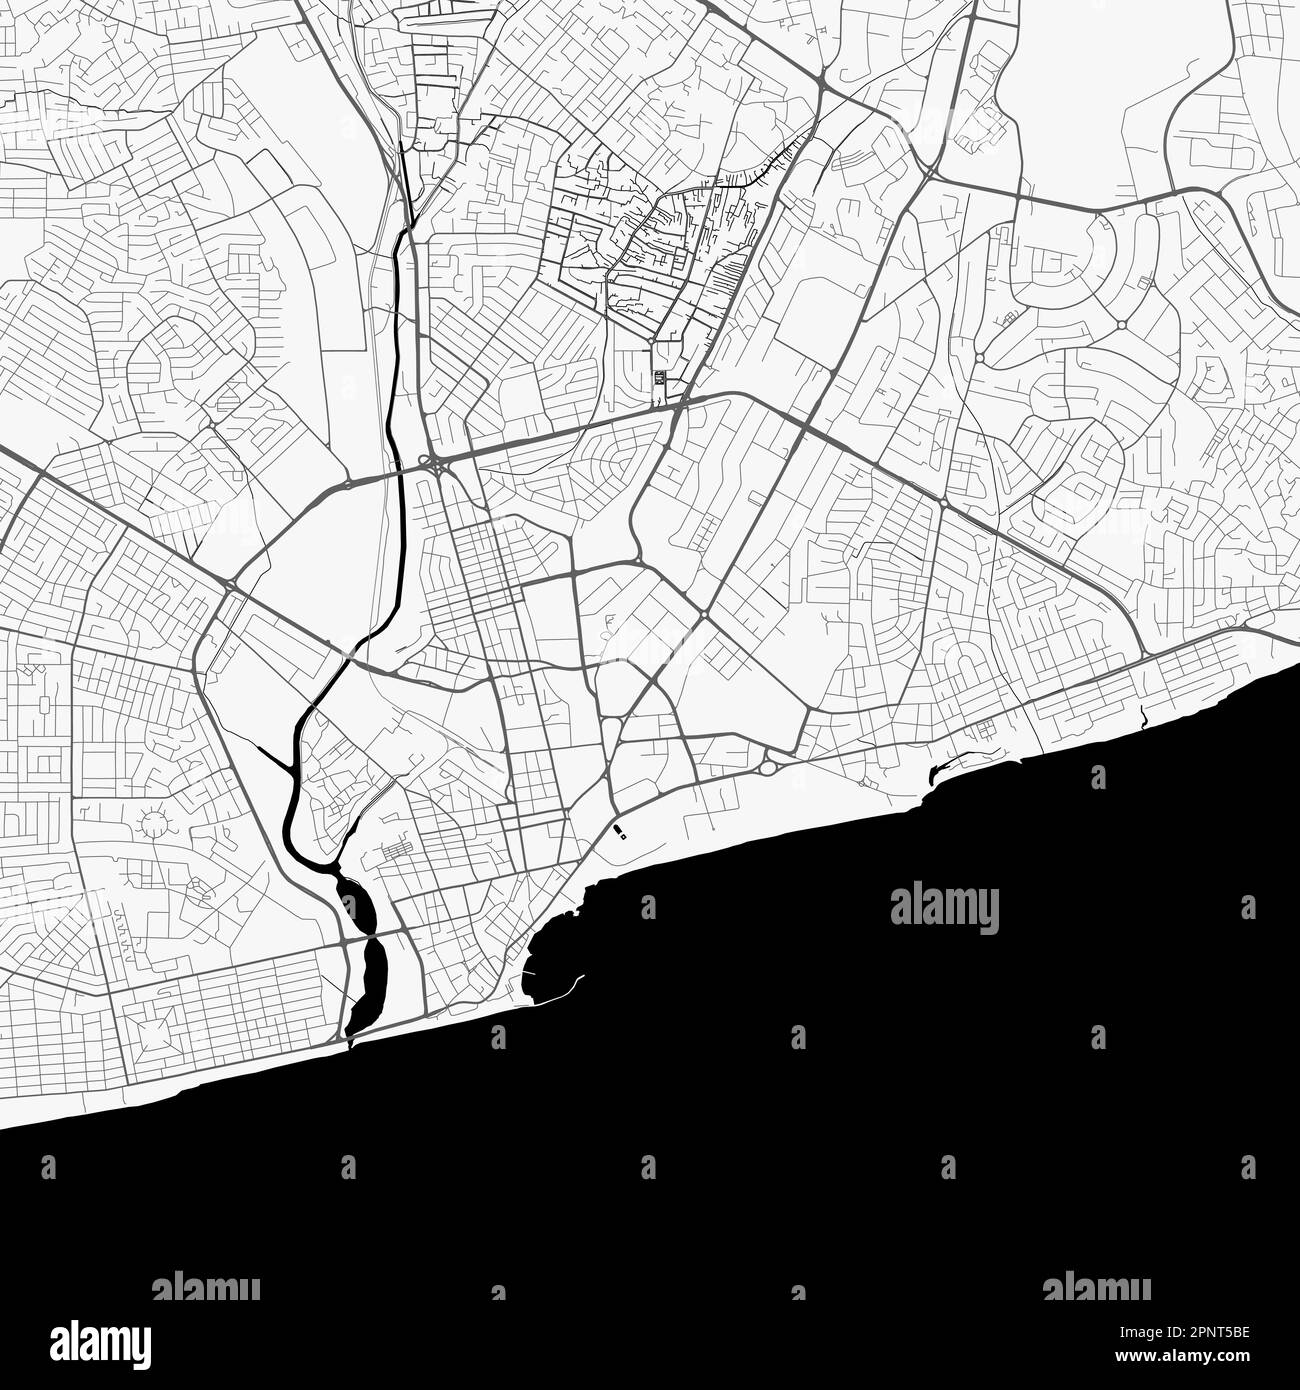 Carte de la ville d'Accra, Ghana. Affiche urbaine noir et blanc. Carte routière avec vue de la région métropolitaine. Illustration de Vecteur